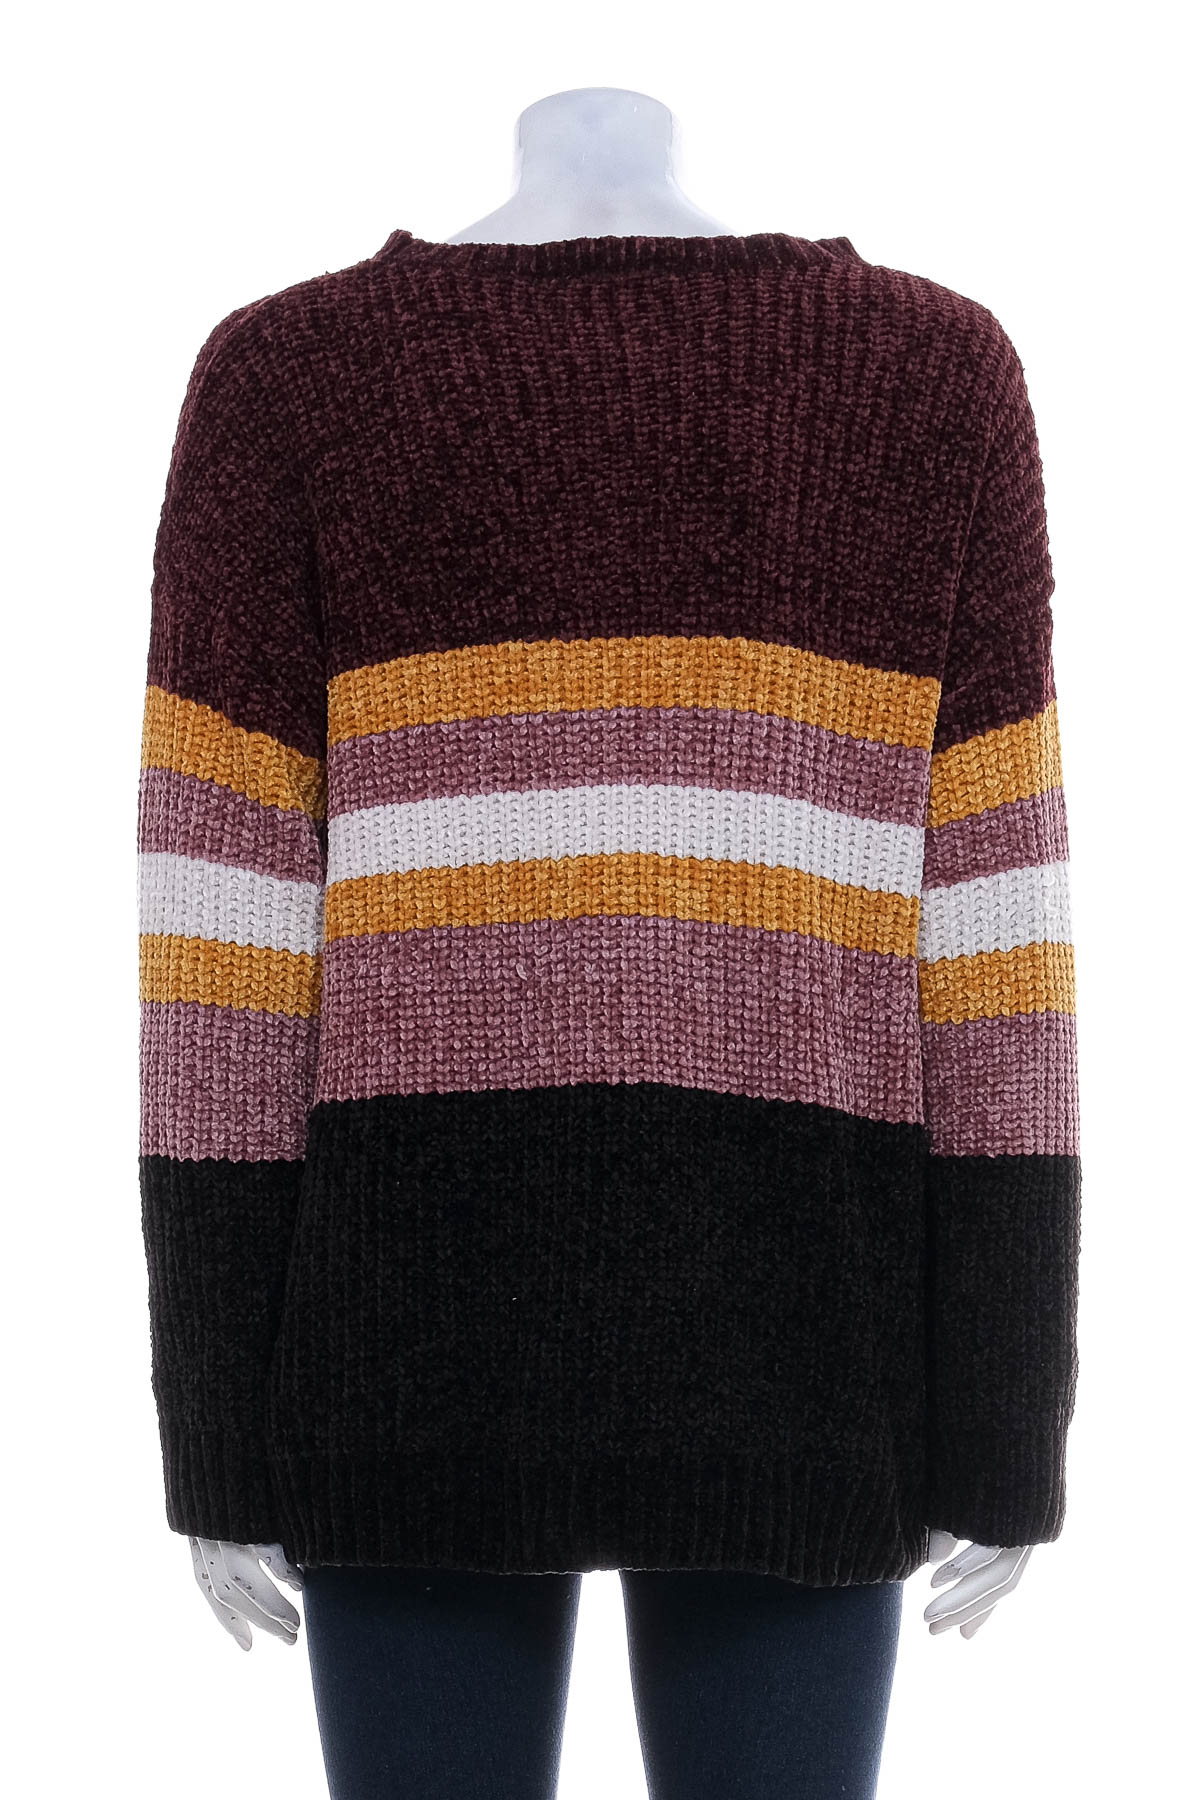 Women's sweater - Esmara - 1